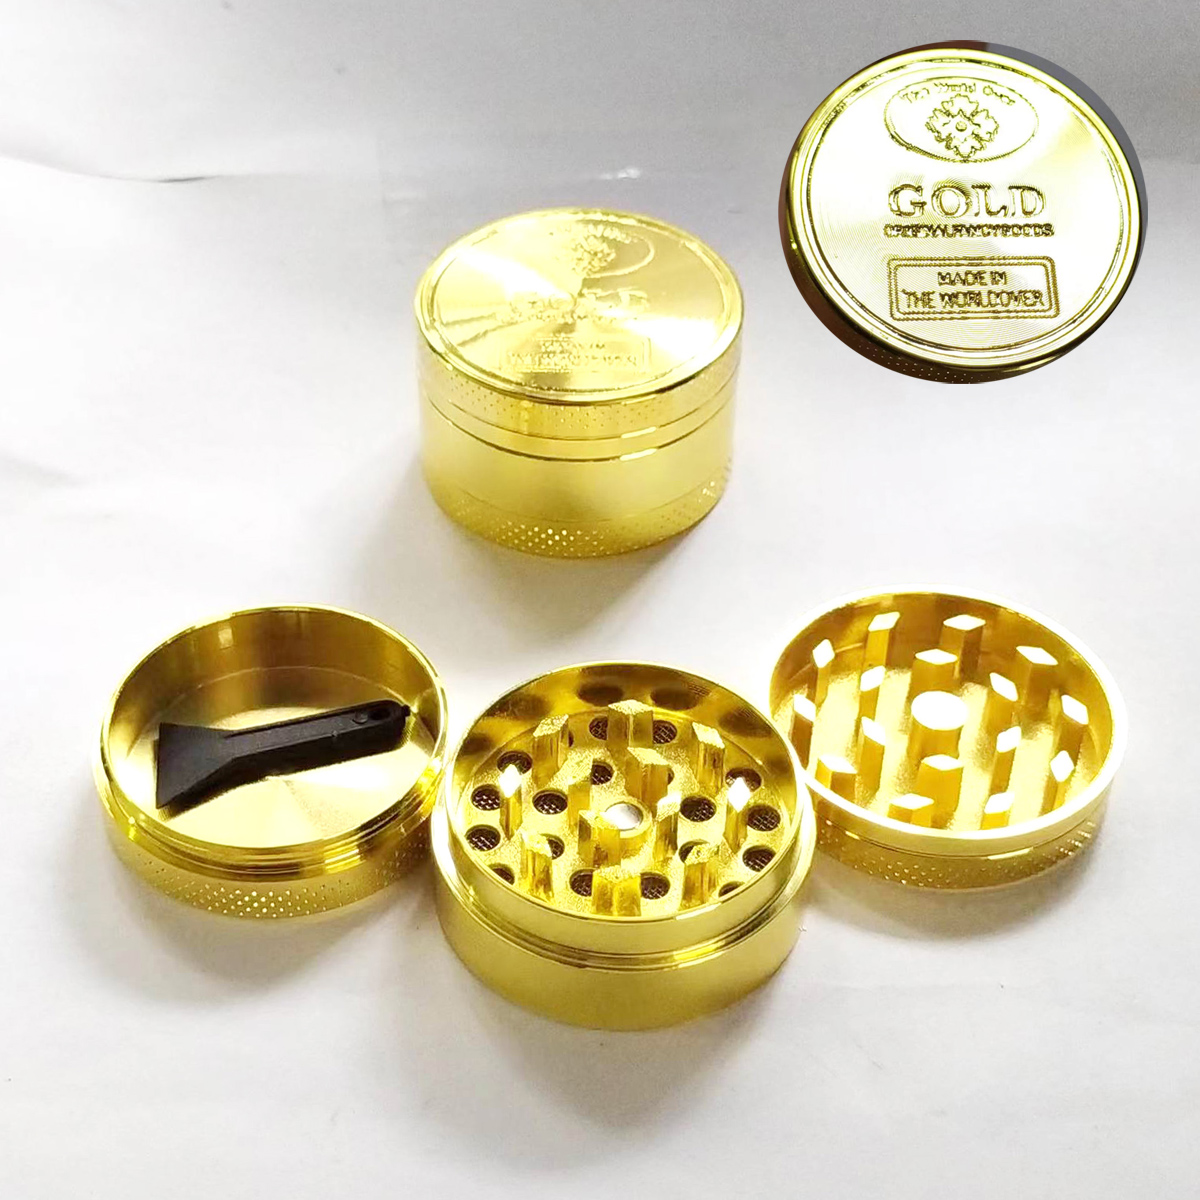 40mm3层金币图案磨烟器GOLD碎烟器金色卷烟器spice grinder